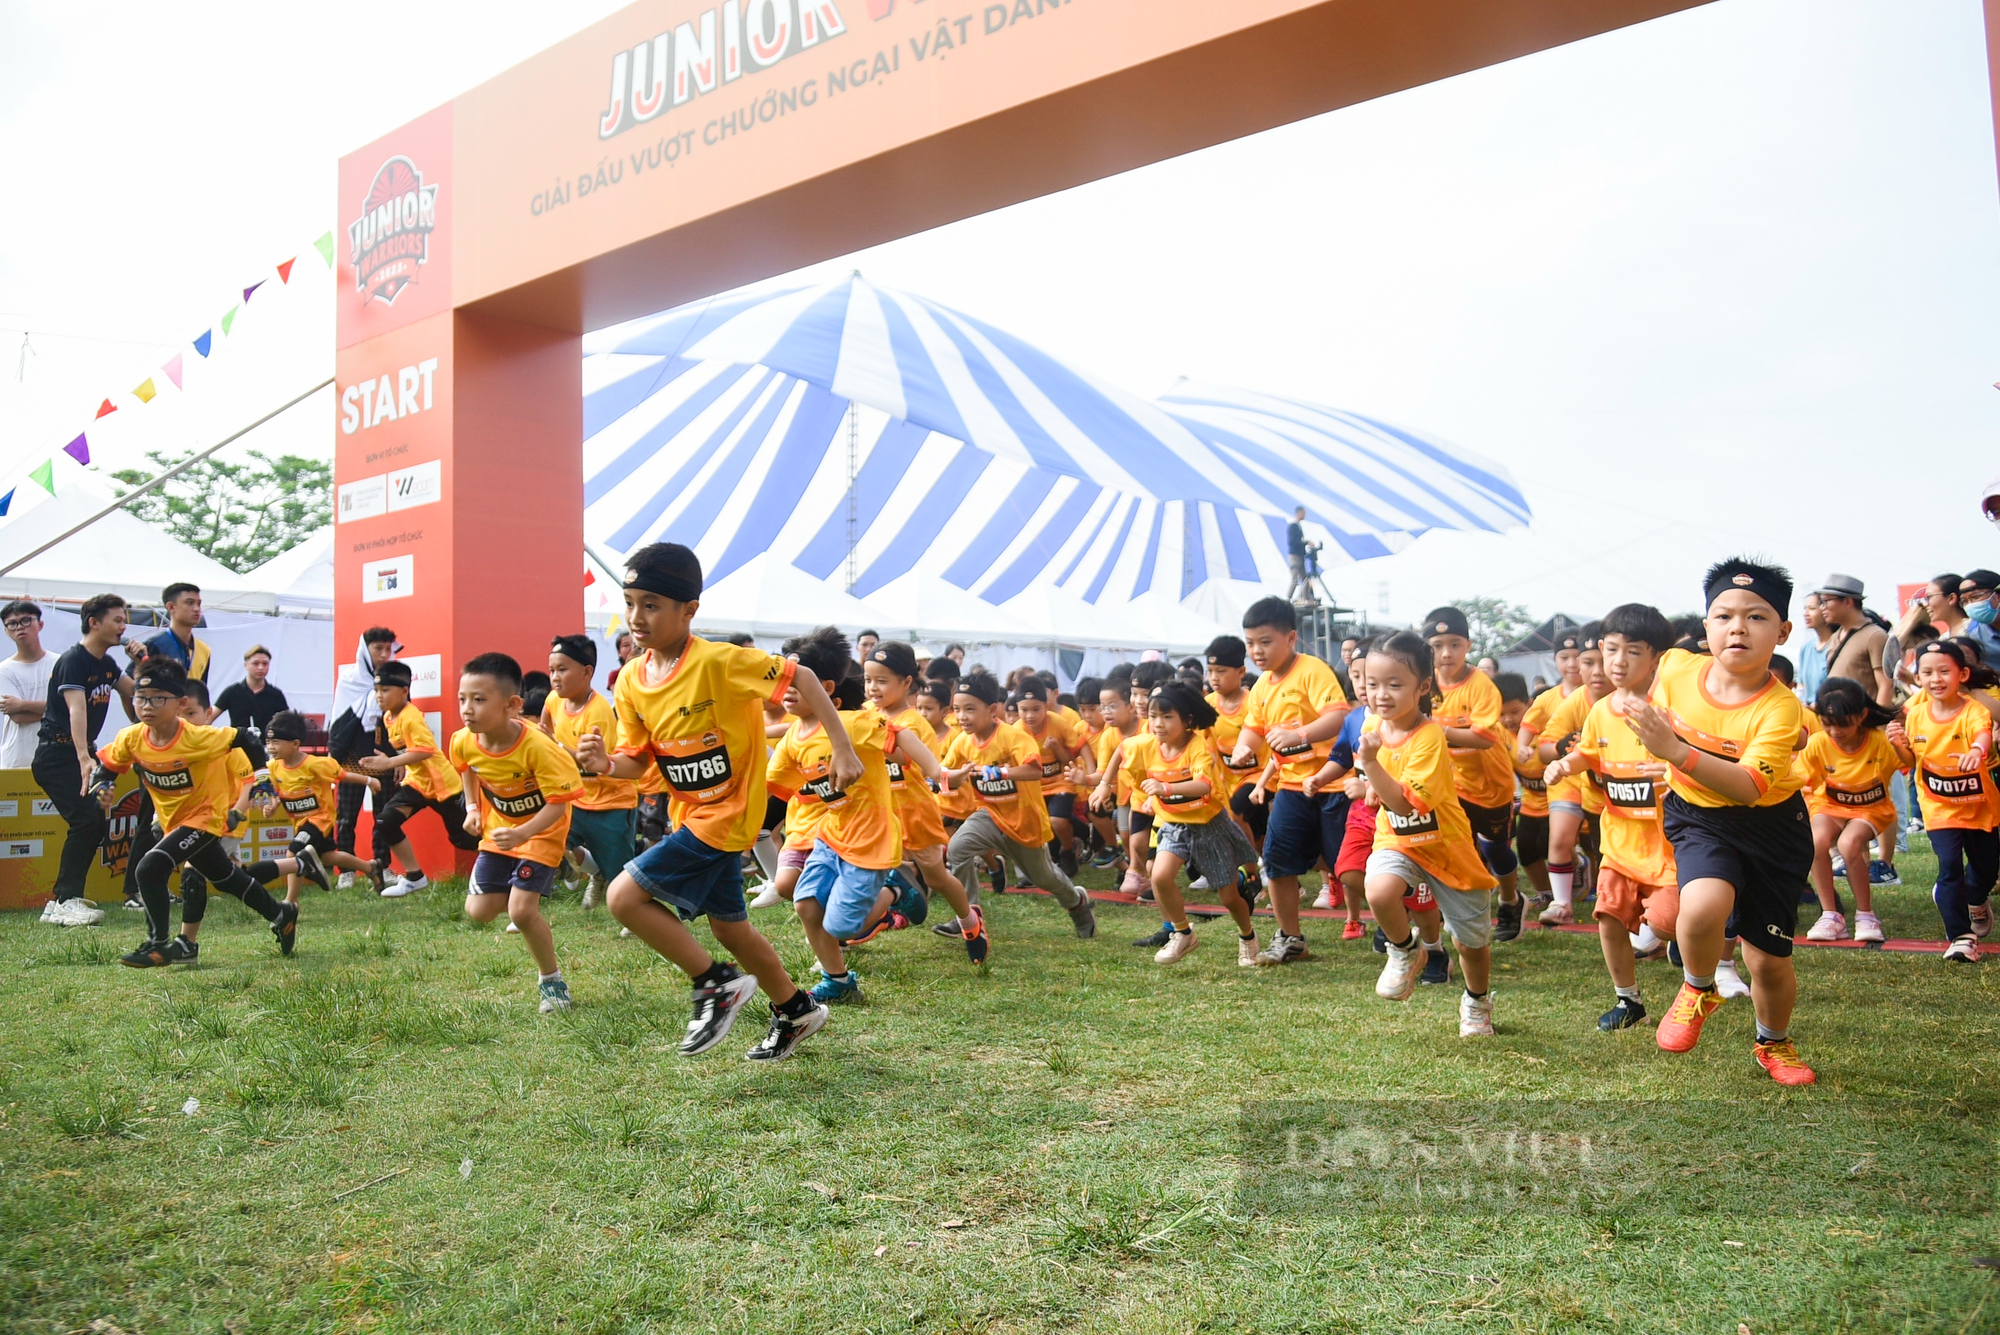 Hơn 1.500 runner nhí tham gia giải đấu vượt chướng ngại vật được tổ chức tại Hà Nội - Ảnh 1.